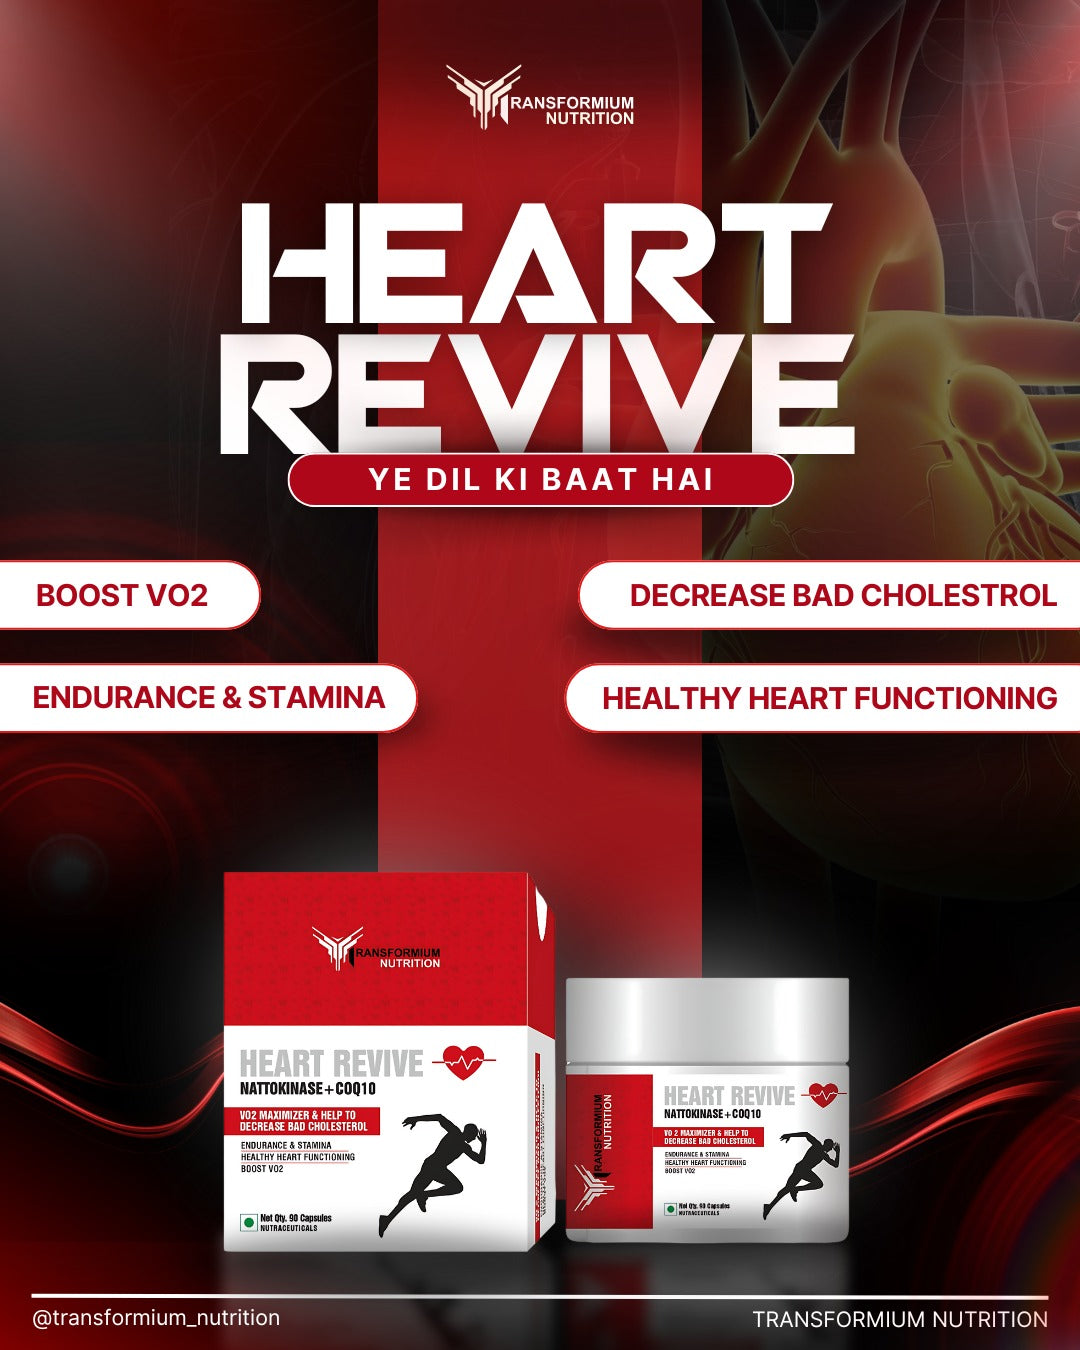 Heart Revive (Nattokinase + COQ10)